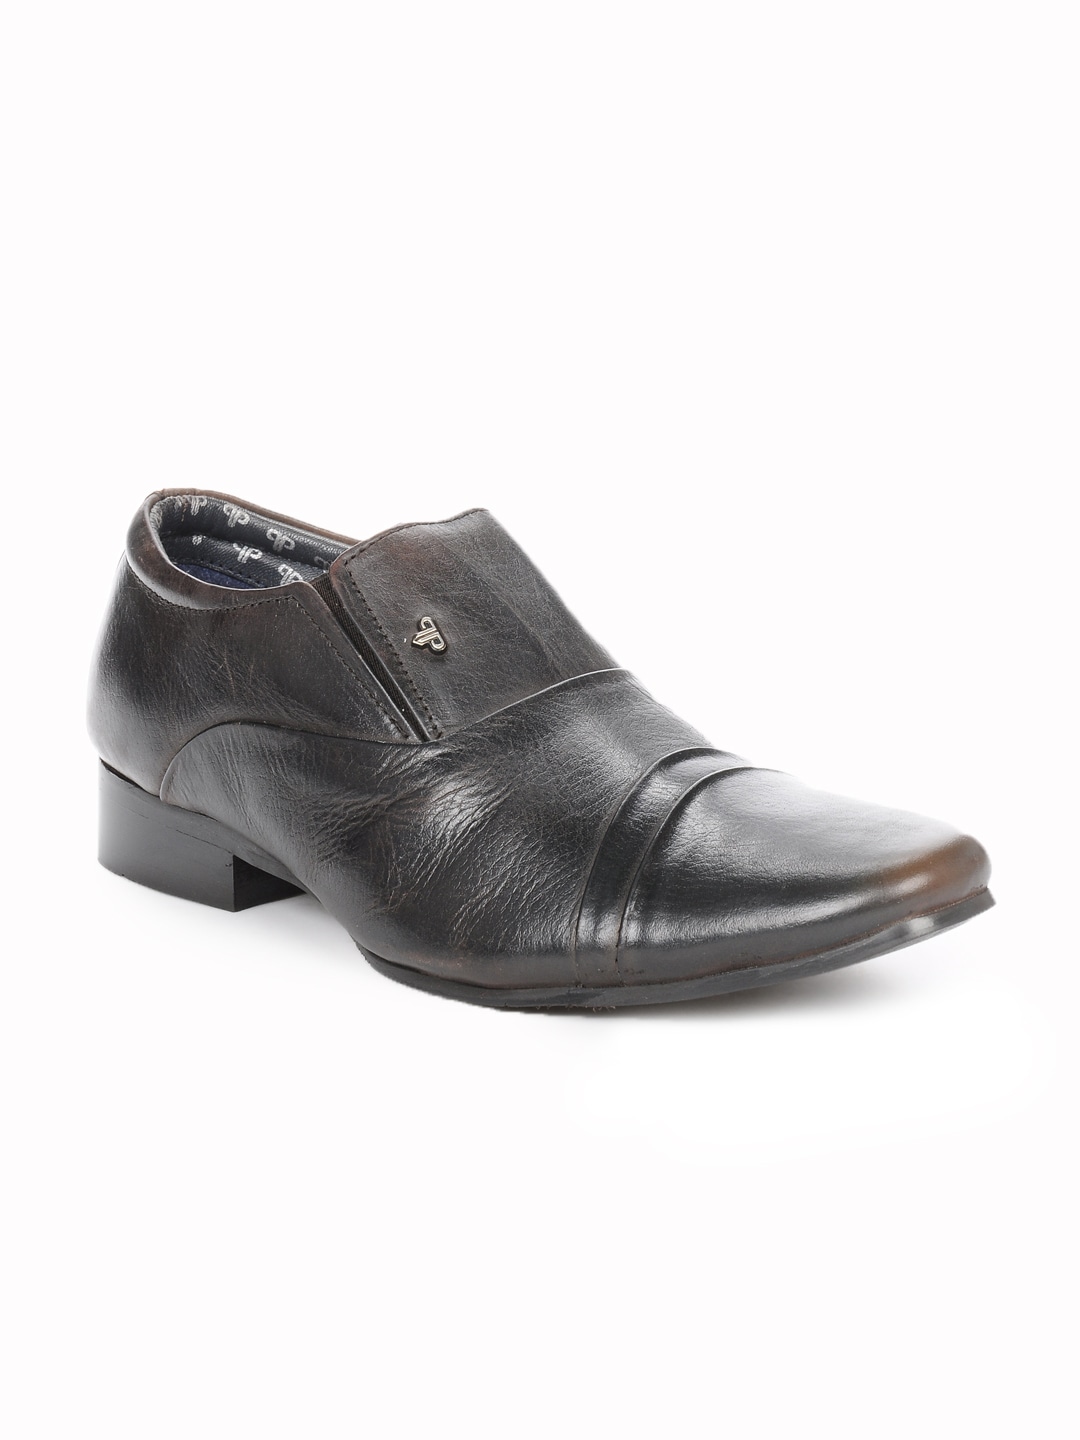 Provogue Men Black & Brown Casual Shoes